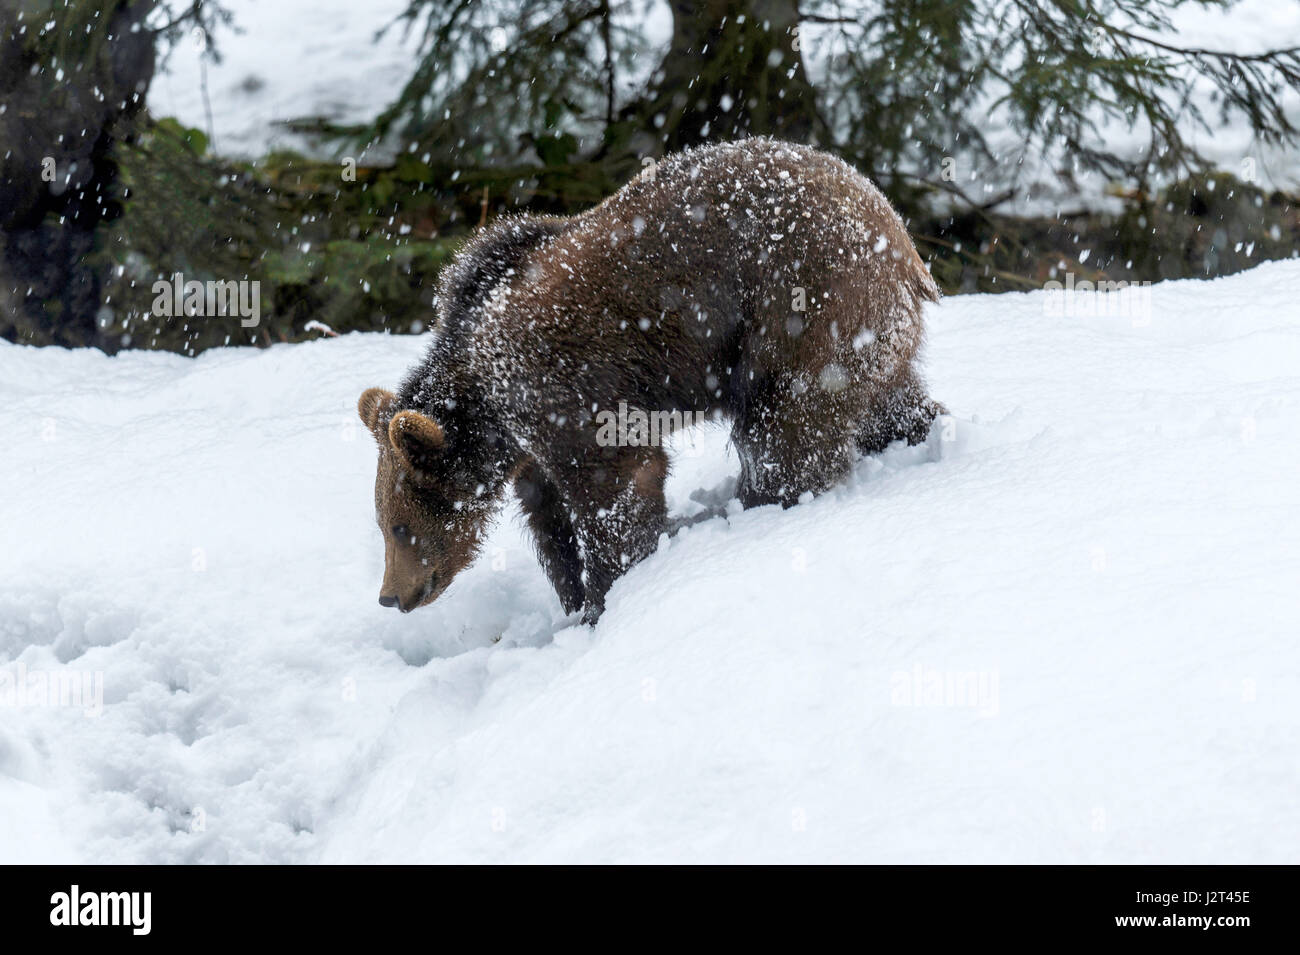 Joven cachorro de oso pardo euroasiático (Ursus arctos) representada forrajeando en una tormenta de nieve en invierno. Foto de stock